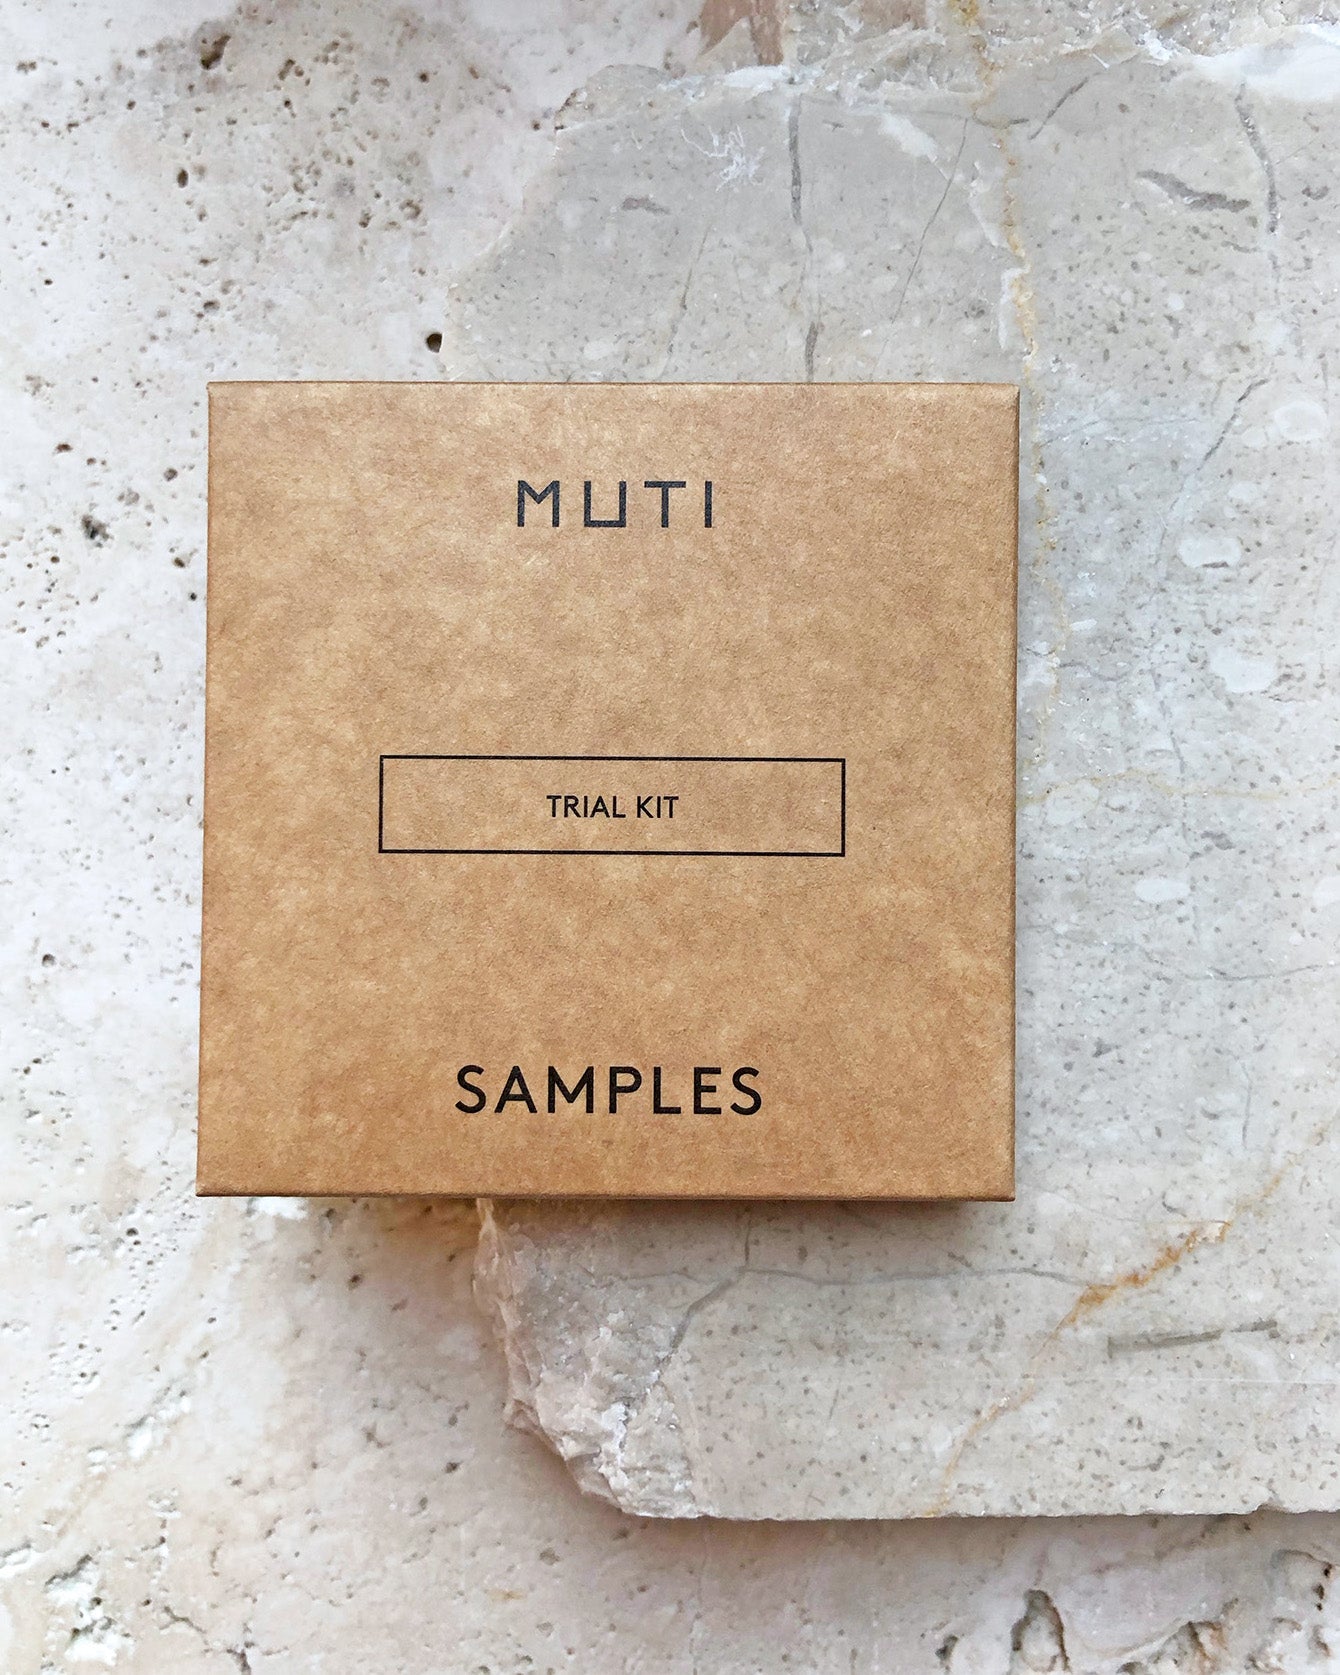 MUTI Trial Kit Samples